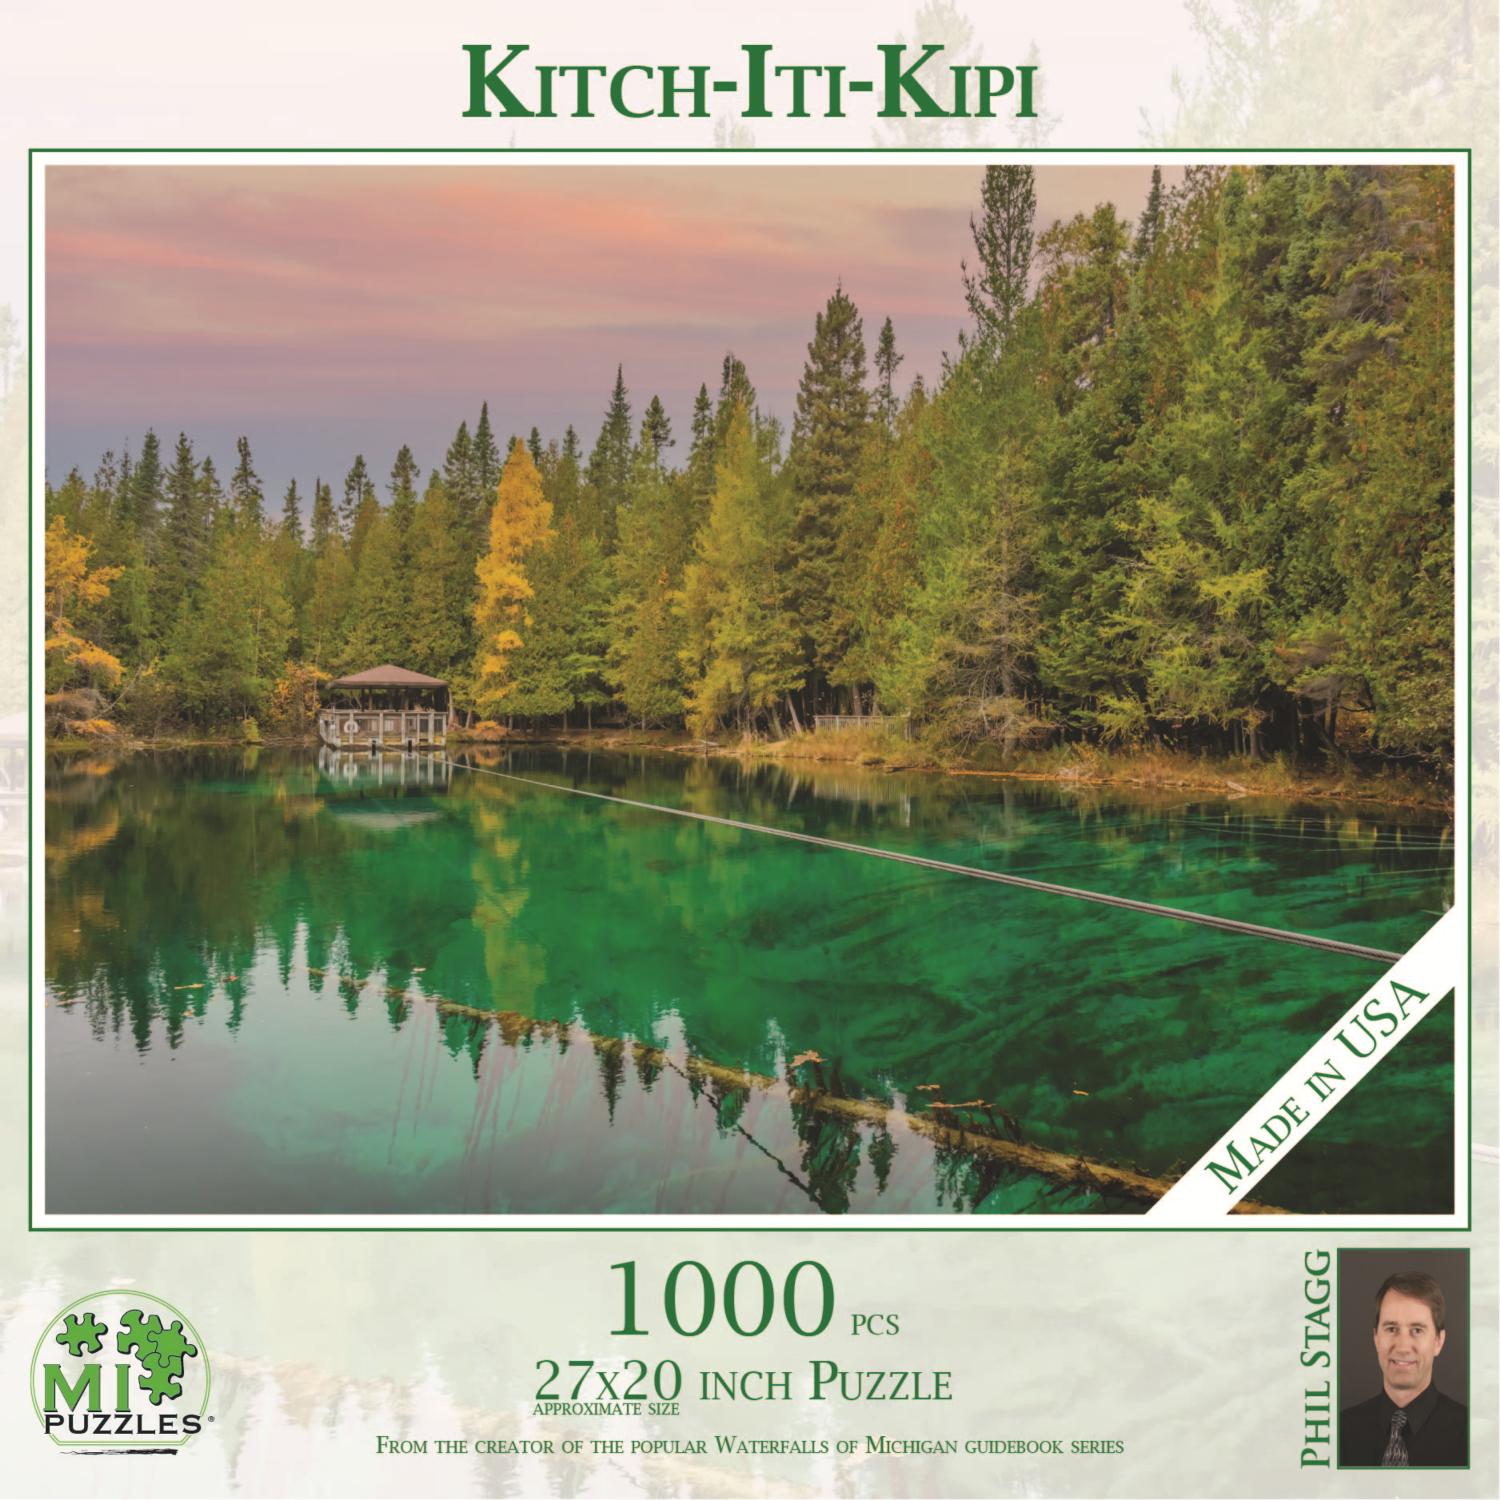 Kitch-Iti-Kipi  Landscape Jigsaw Puzzle